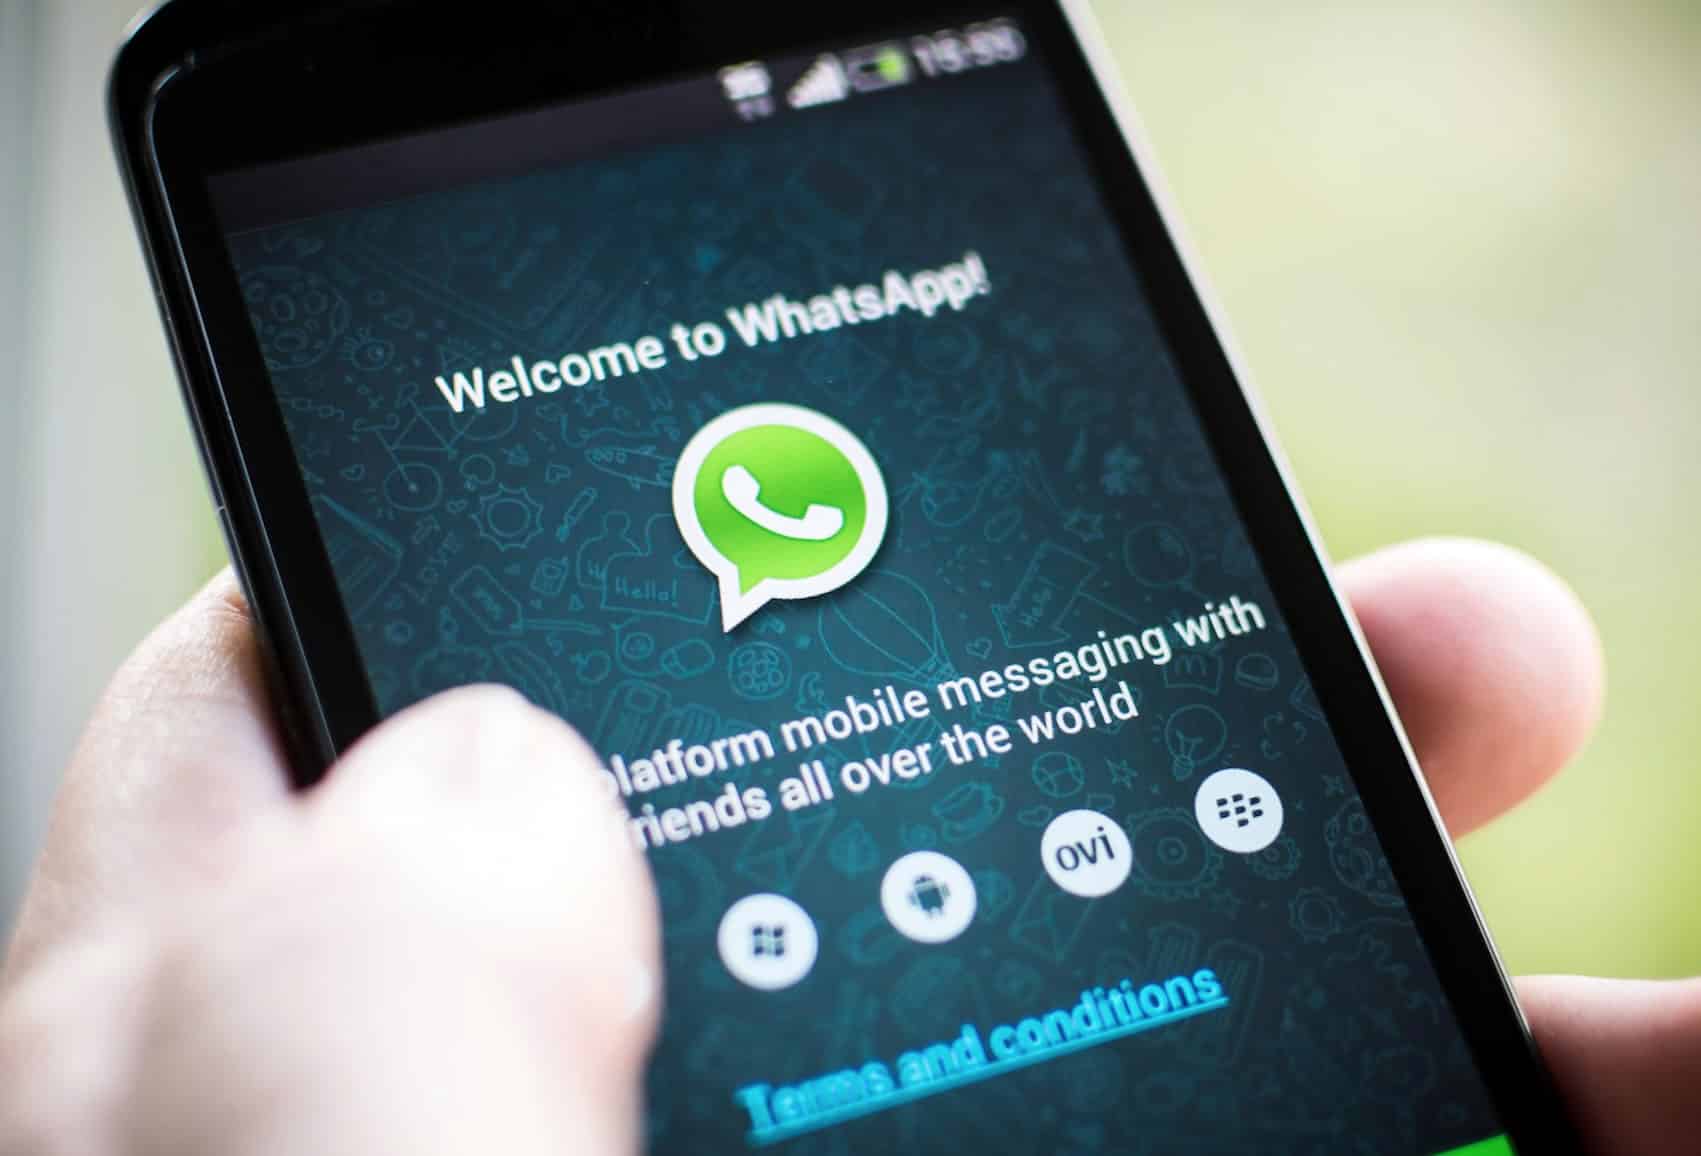 Los términos de servicio de WhatsApp los ves una vez que activas tu teléfono.